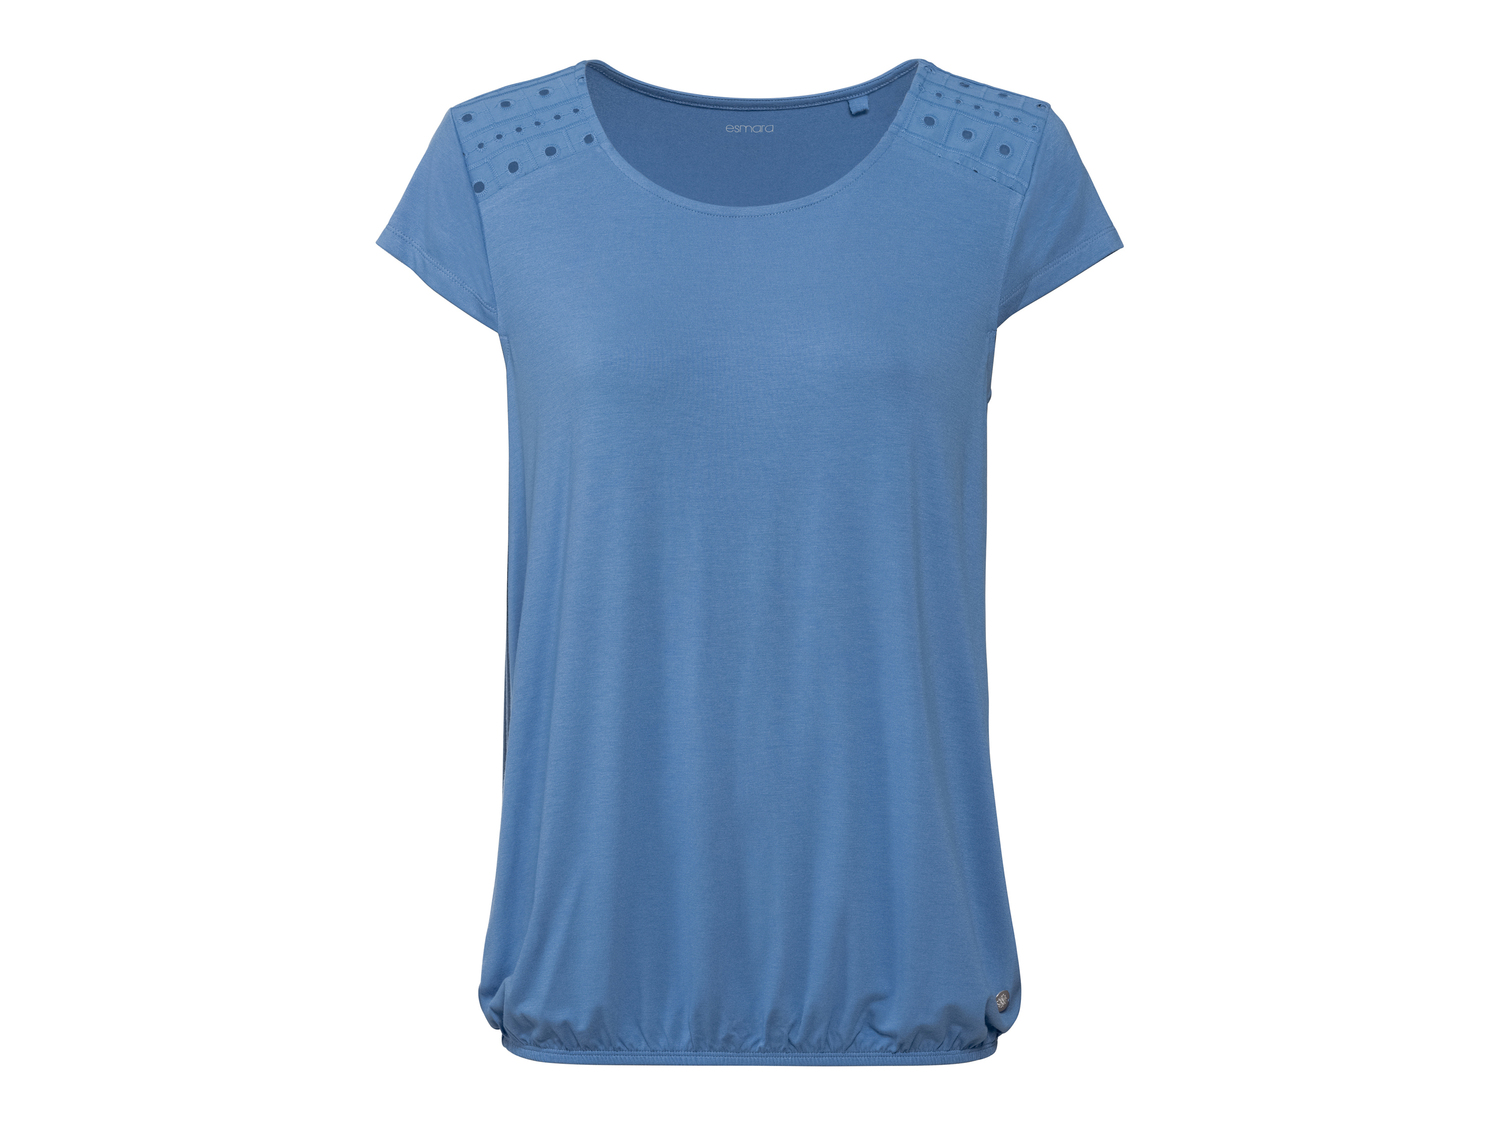 T-shirt da donna Esmara, prezzo 4.99 &#8364; 
Misure: S-L
Taglie disponibili

Caratteristiche

- ...